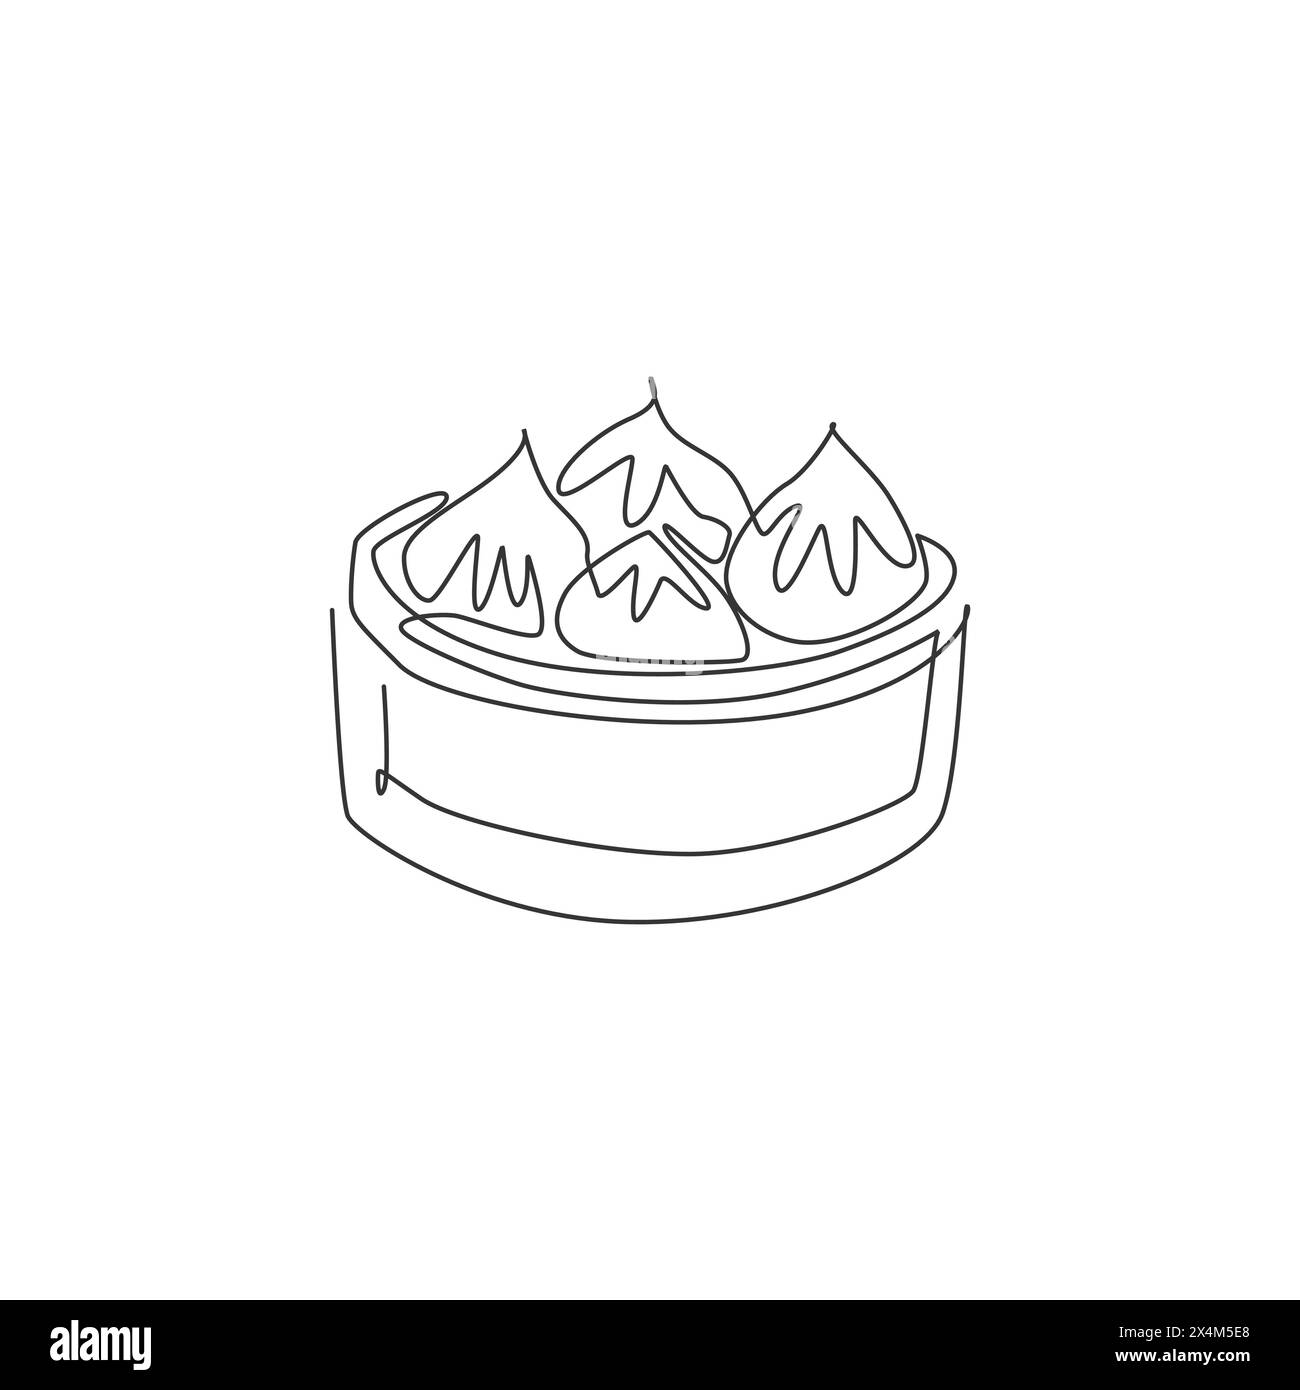 Eine einzelne Linie Zeichnung der frischen chinesischen Knödel Logo Grafik Vektor Illustration. Asiatische Küche, Café-Menü und Restaurant-Badge-Konzept. Moderner Continuo Stock Vektor